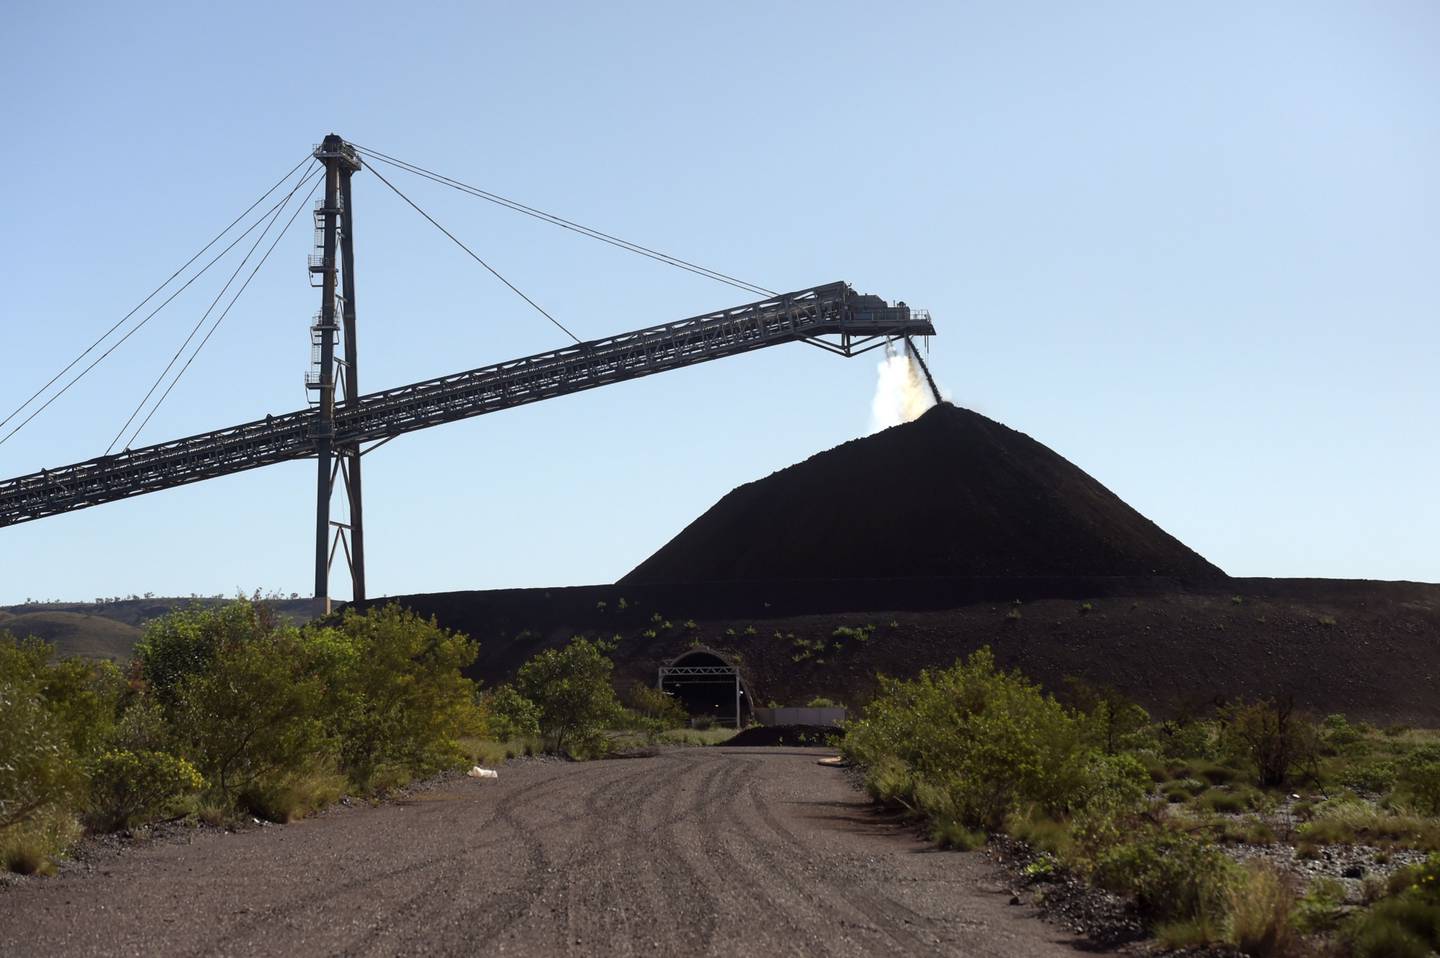 Vale em alta: Minério de ferro ultrapassa U$ 125 com flexibilização na China